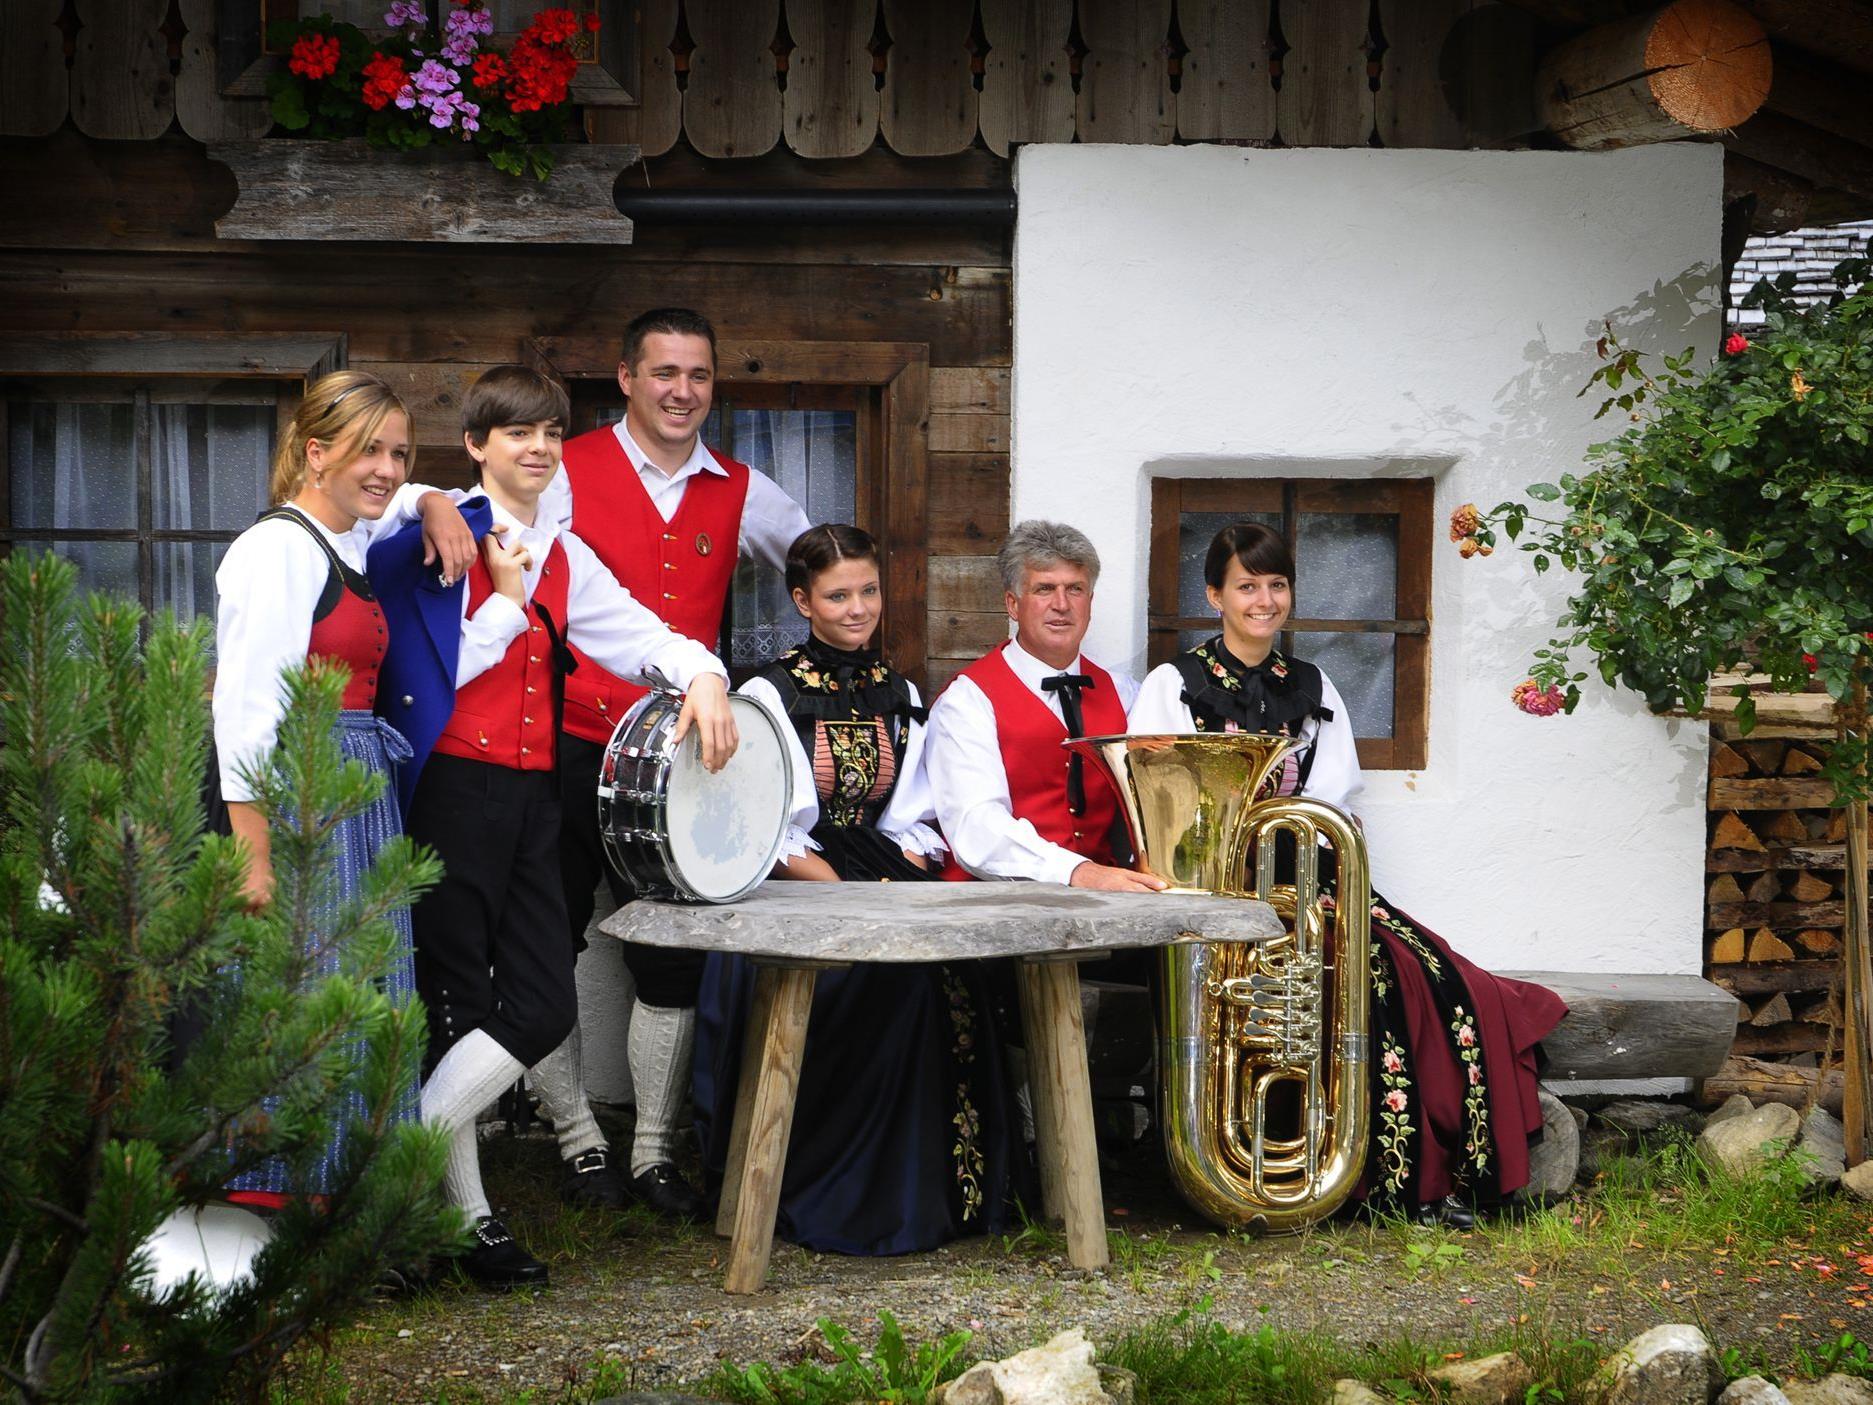 Am kommenden Samstag findet das Frühjahrskonzert der Bürgermusik Silbertal statt.